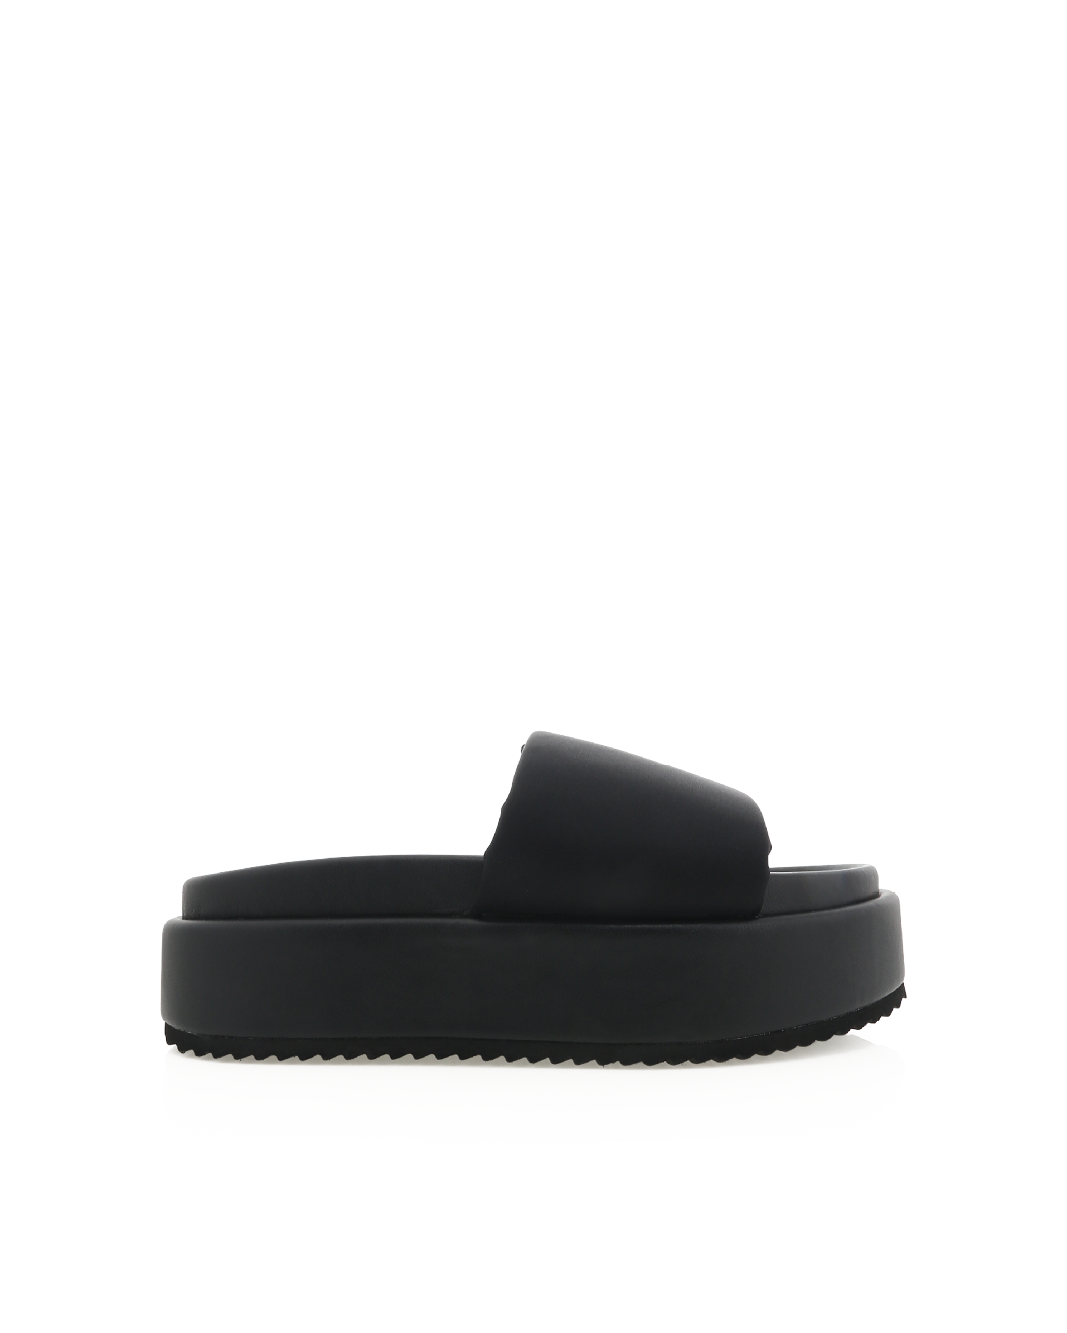 GLORIA - BLACK NEOPRENE-Sandals-Billini-BILLINI USA